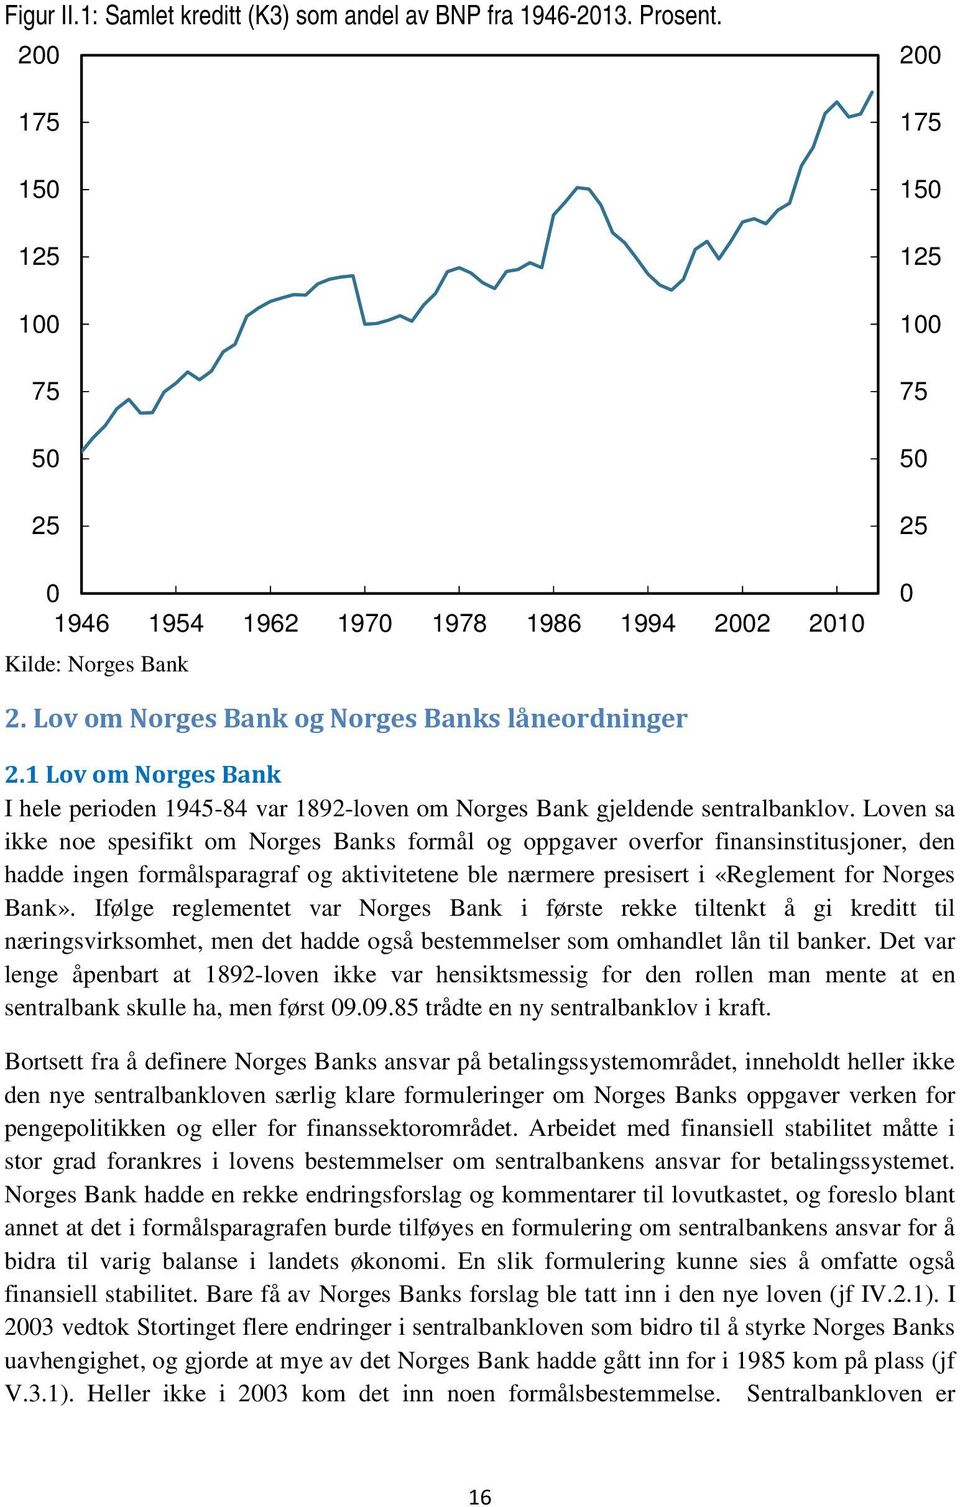 1 Lov om Norges Bank I hele perioden 1945-84 var 1892-loven om Norges Bank gjeldende sentralbanklov.